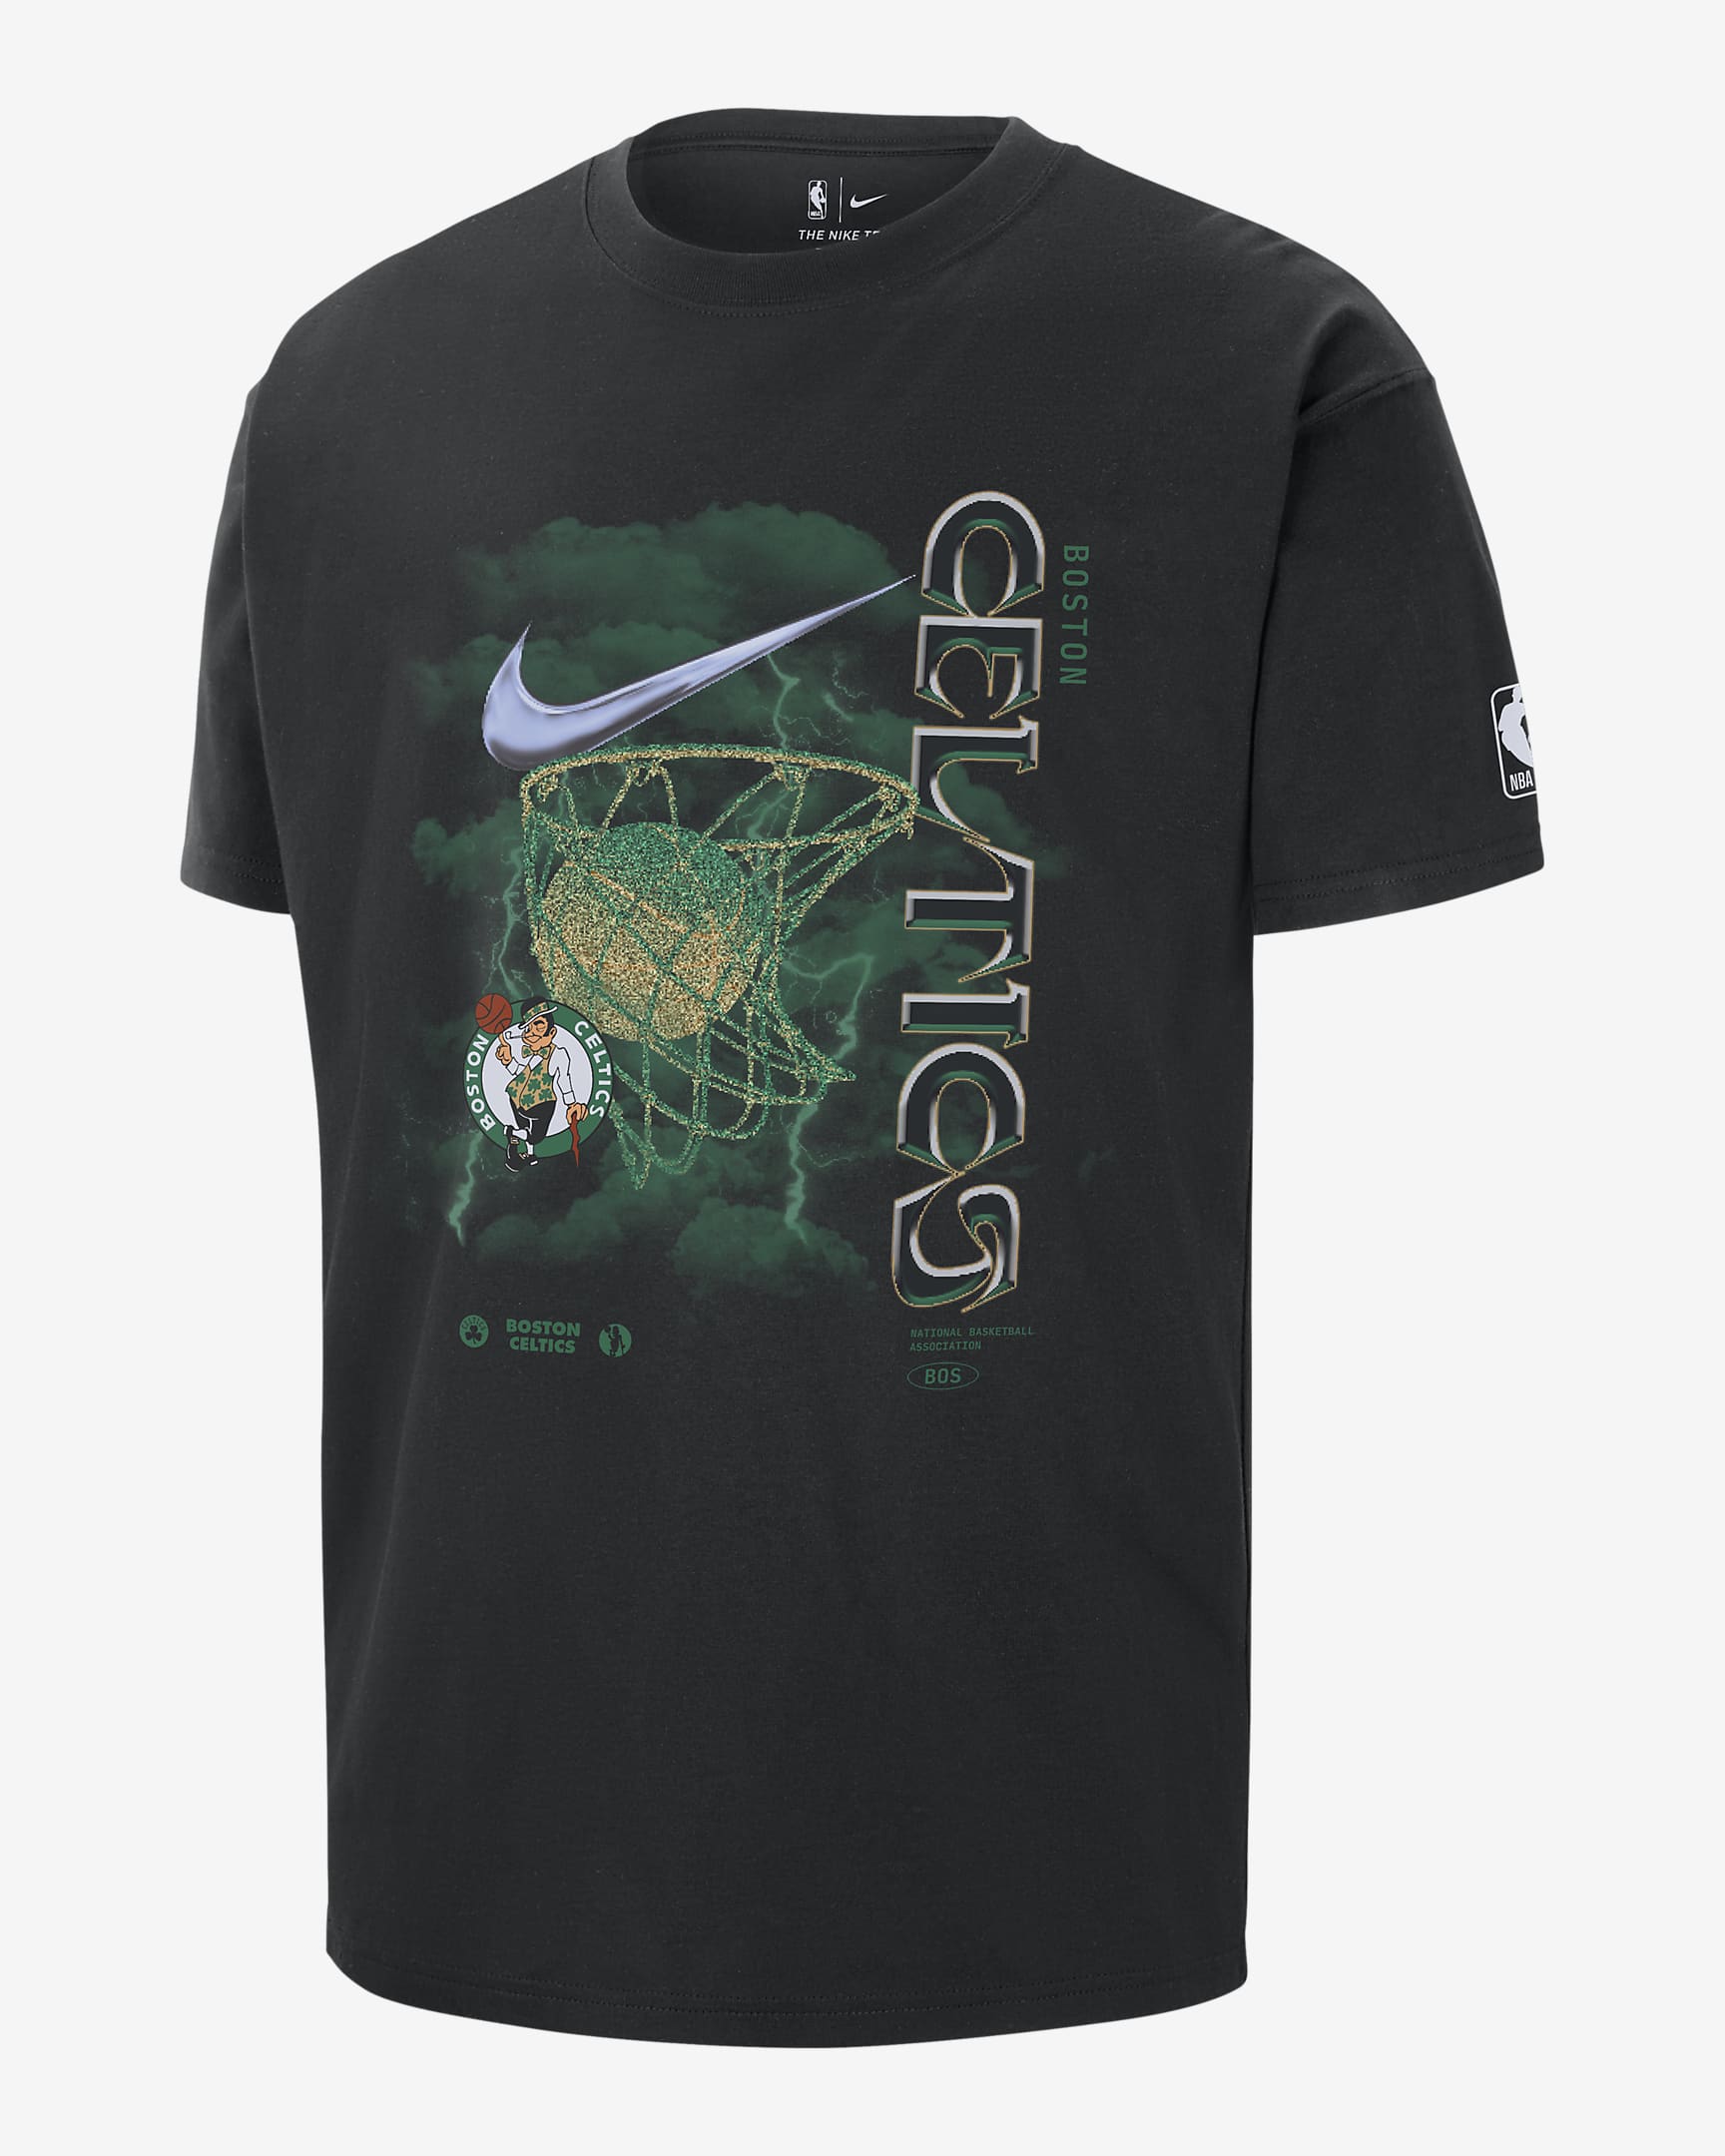 Boston Celtics Courtside Max90 Men's Nike NBA T-Shirt. Nike RO